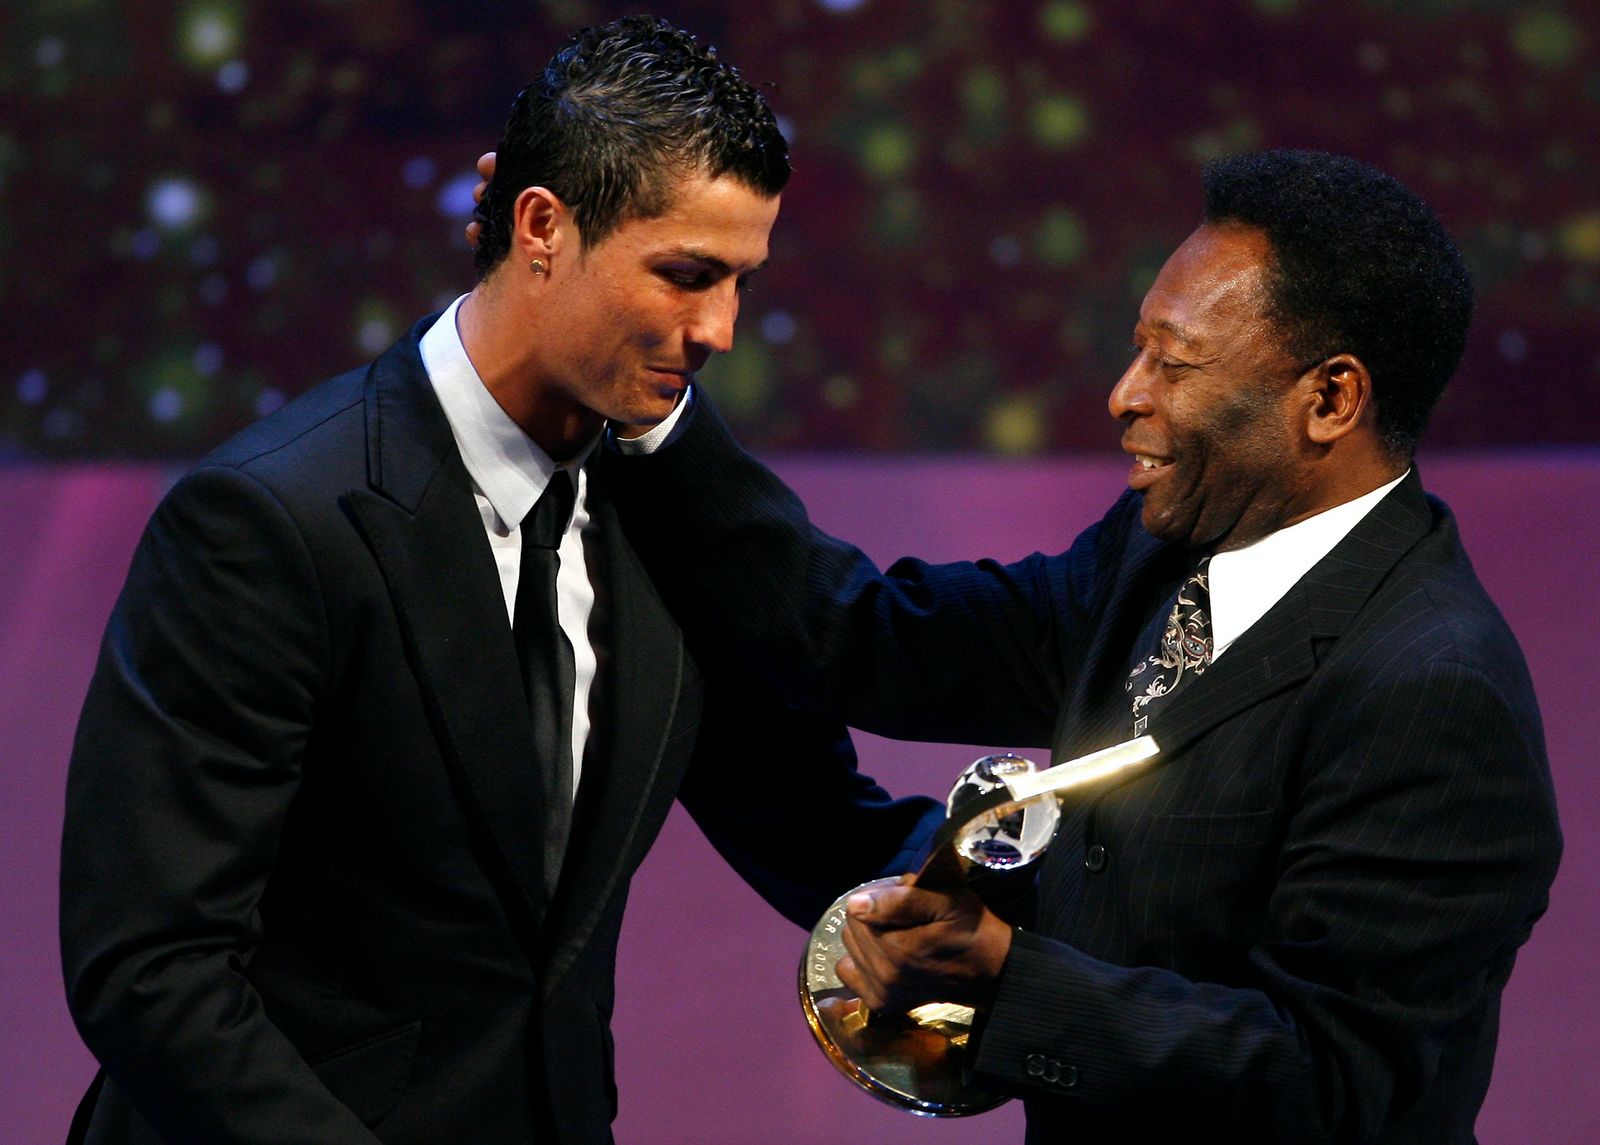 كريستيانو رونالدو البرتغالي (يسار) يتسلم جائزة أفضل لاعب في العالم لعام 2018 من أسطورة كرة القدم البرازيلي بيليه - REUTERS